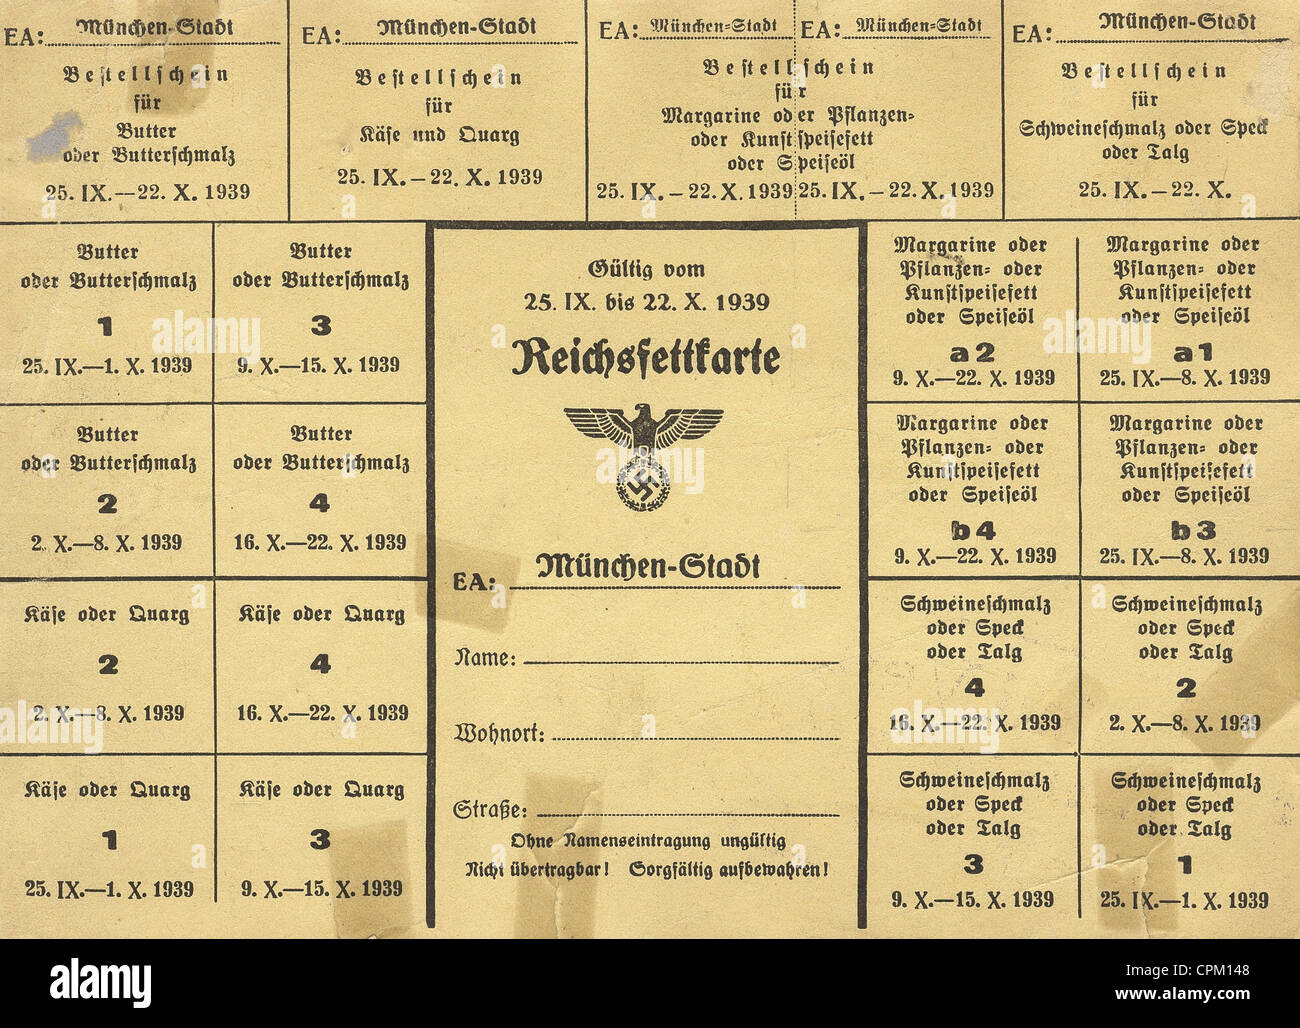 Reichsfettkarte (Reich Rationierungskarte), 1939 Stockfoto